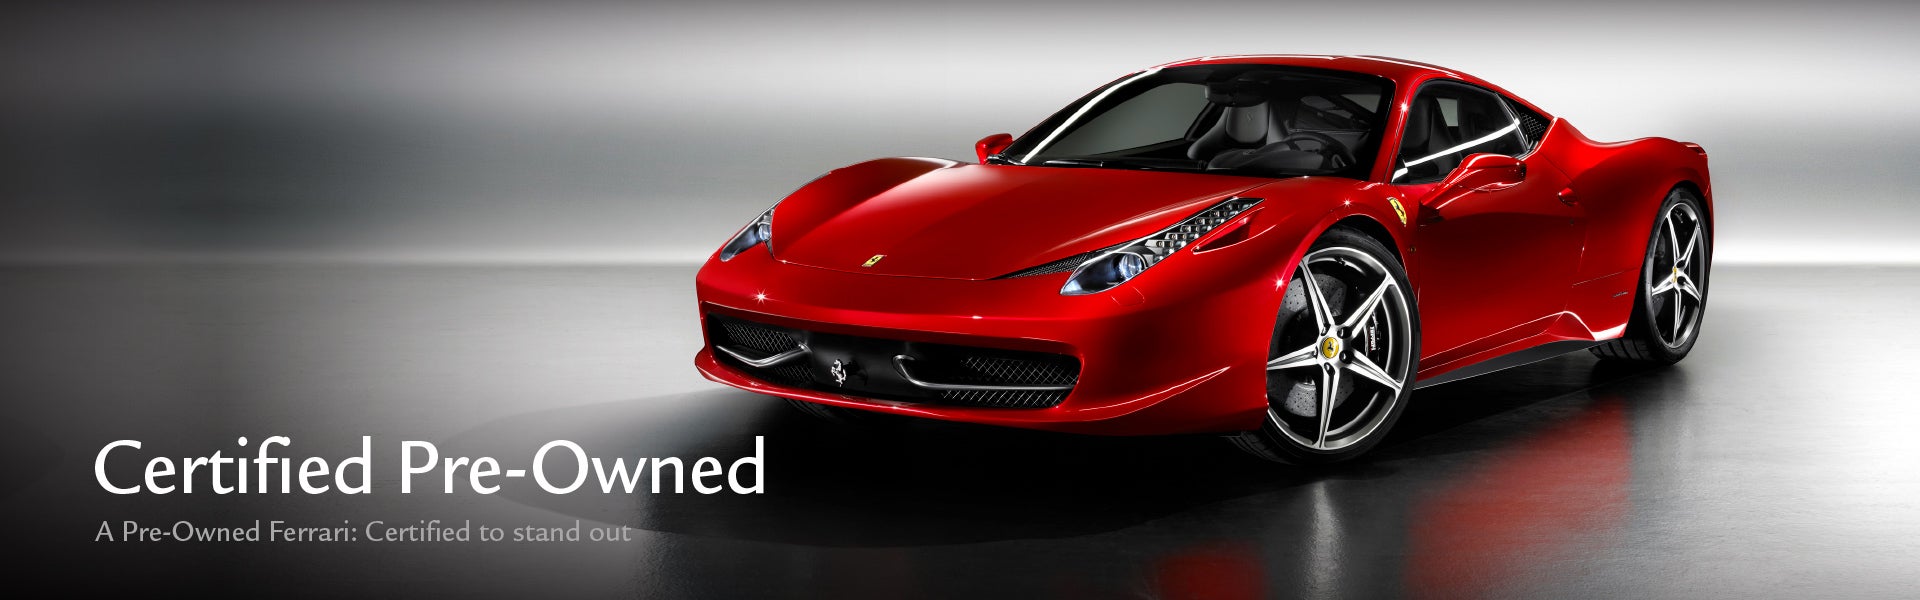 Ferrari Certified